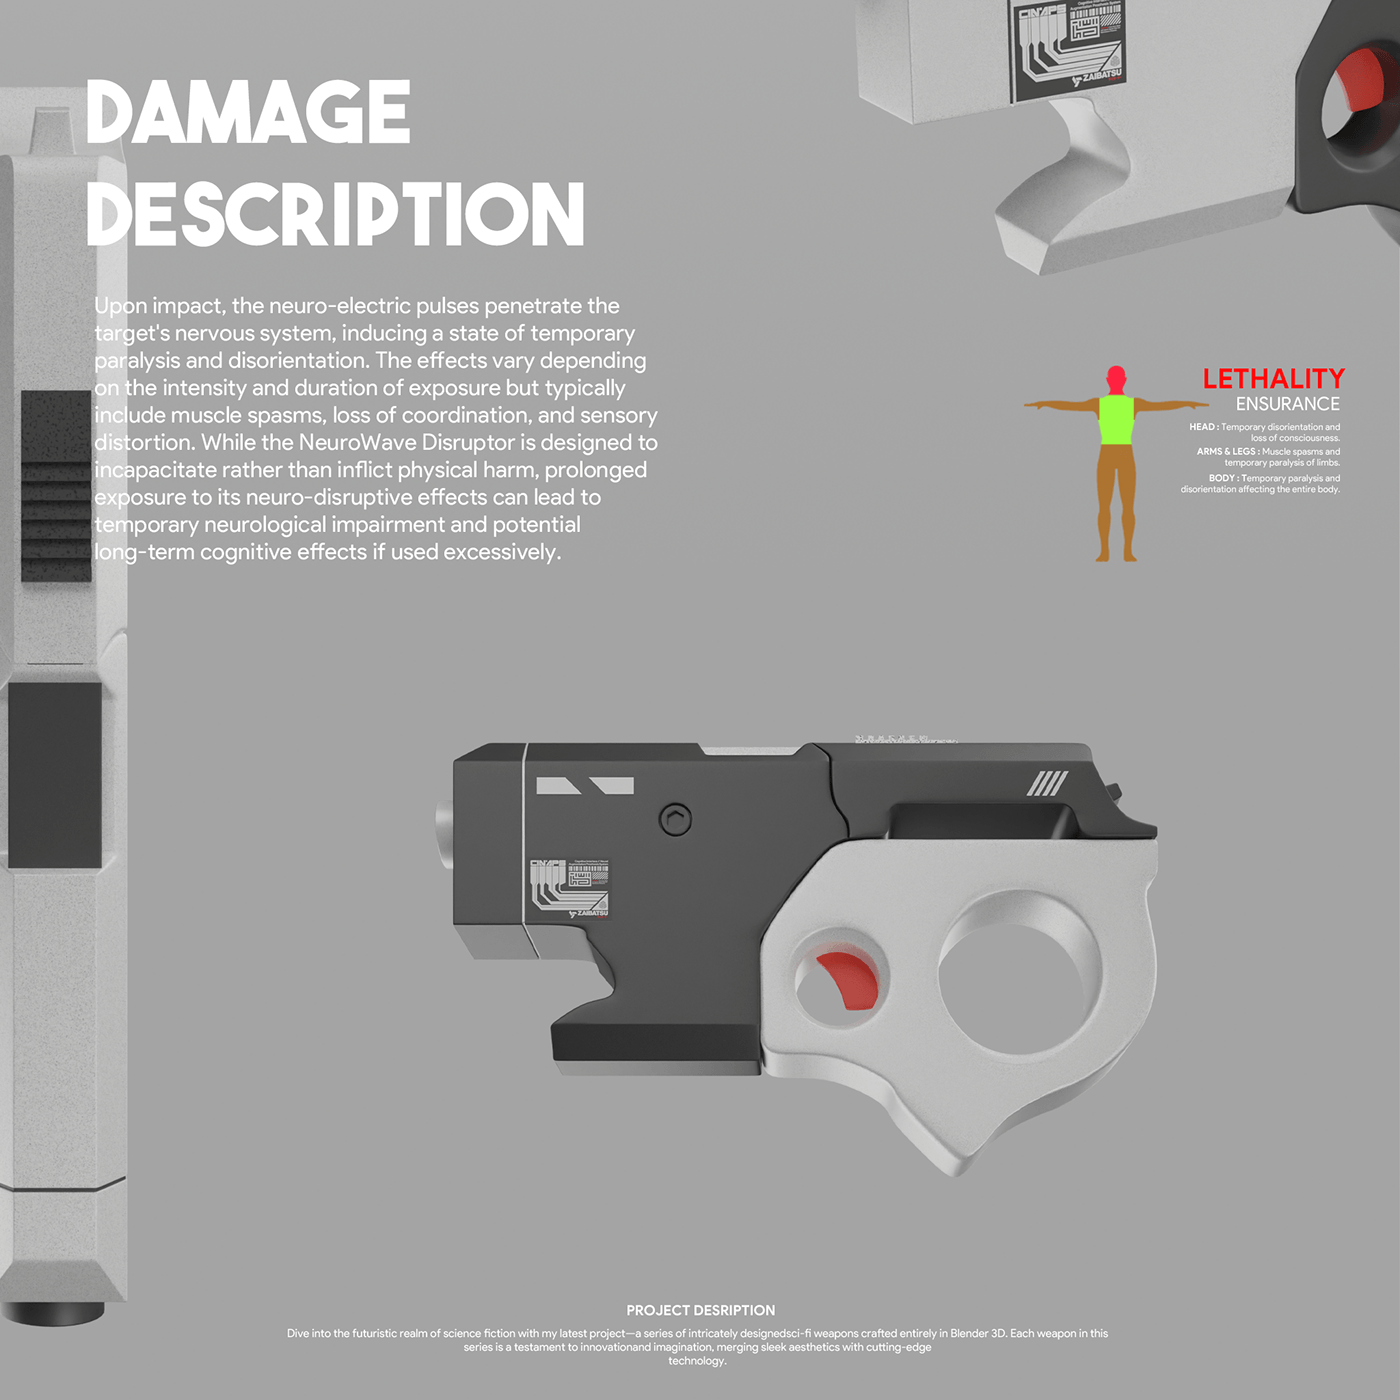 blender3d Scifi science fiction weapon design weapon concept 3DArtist artist weapon artist